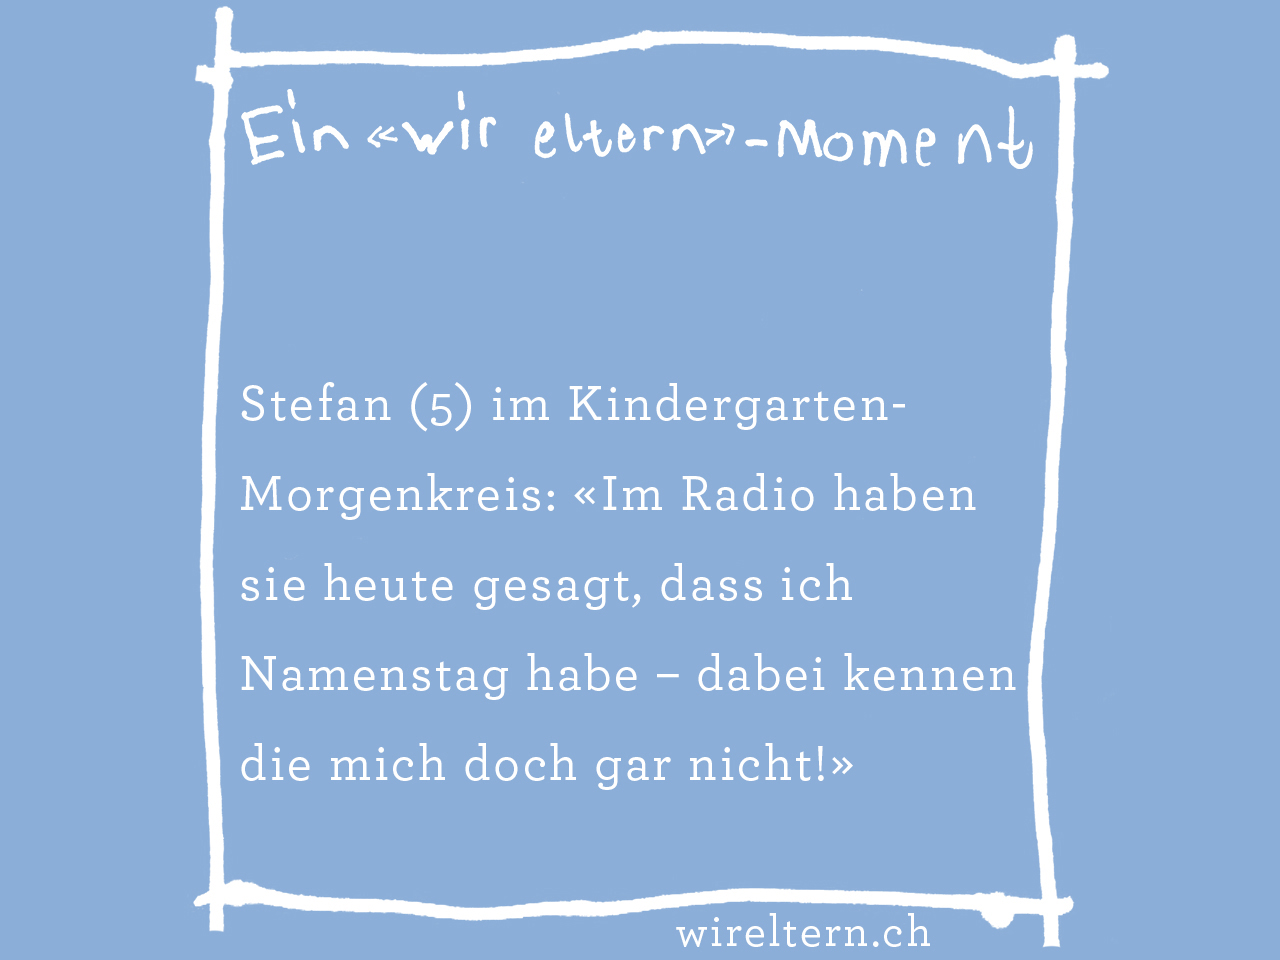 Stefan (5) im Kindergarten-Morgenkreis: «Im Radio haben sie heute gesagt, dass ich Namenstag habe – dabei kennen die mich doch gar nicht!»